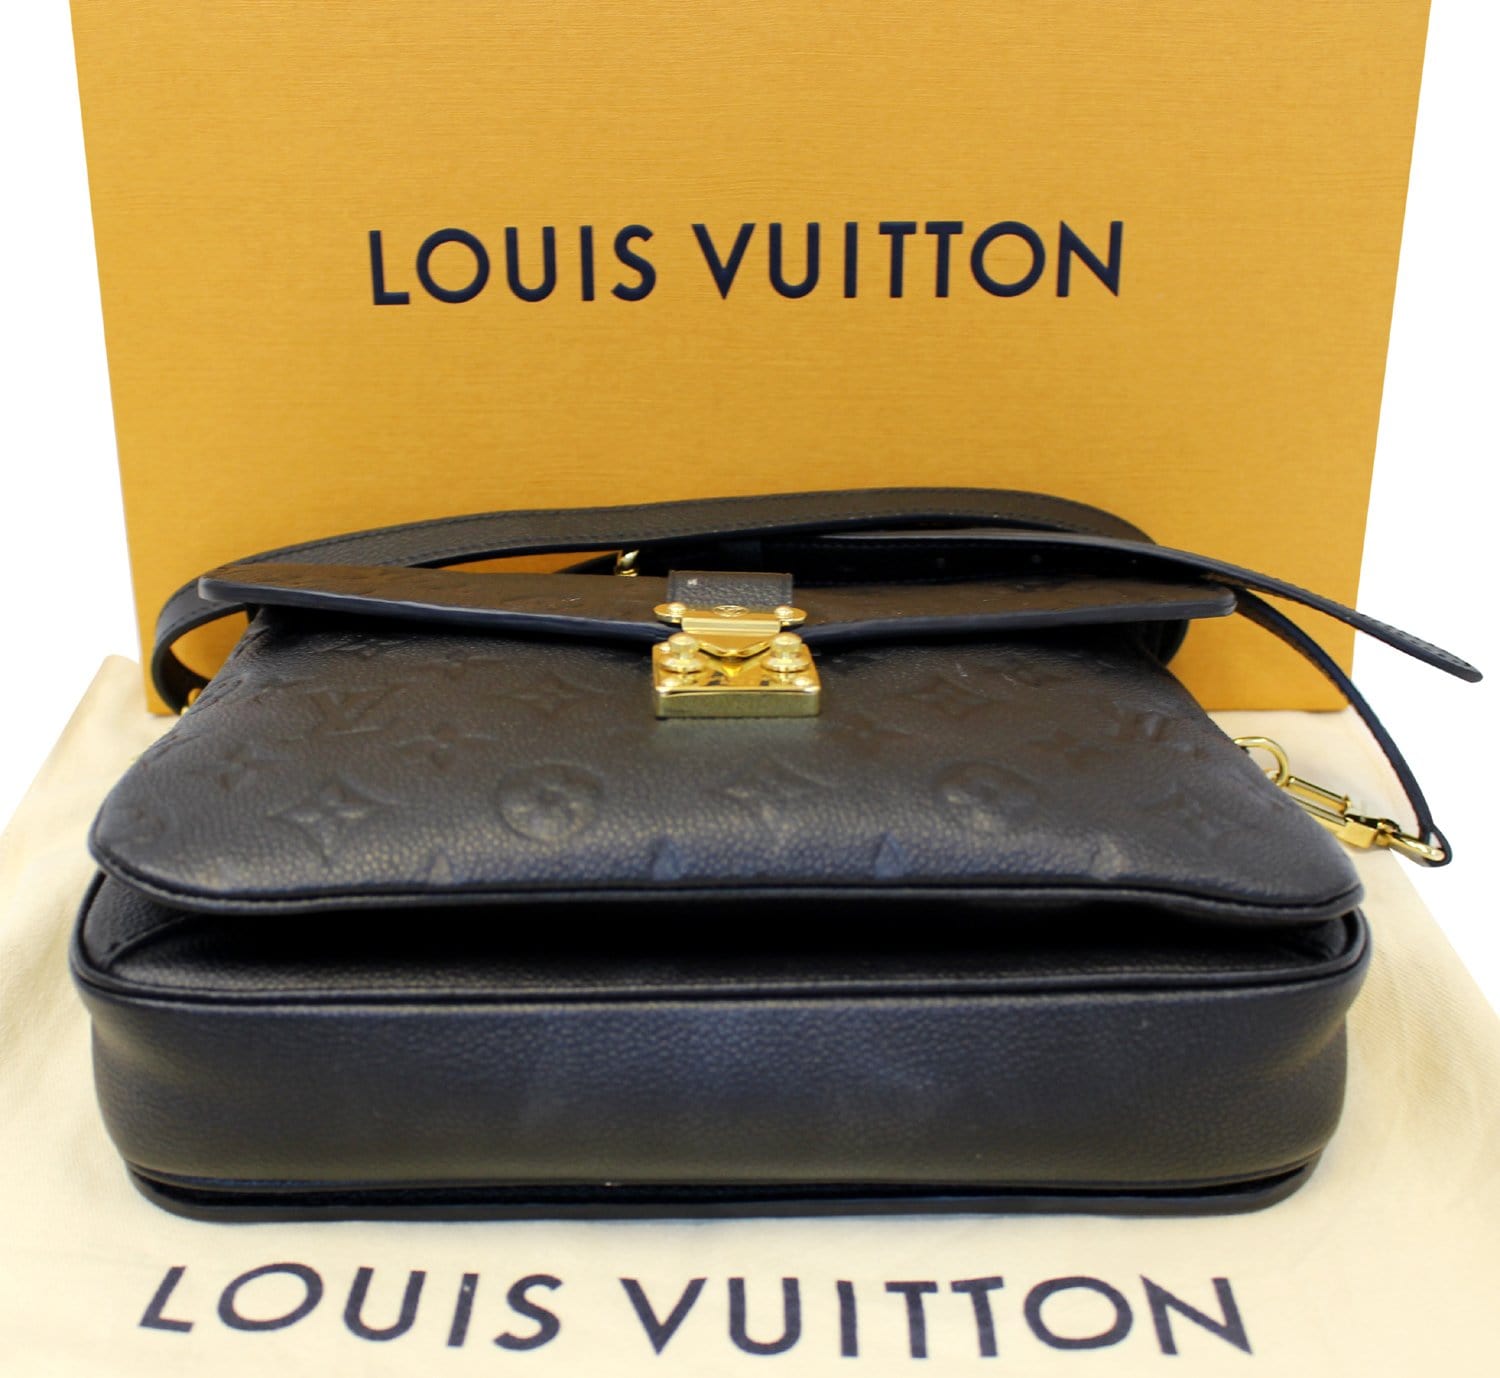 Louis Vuitton Matière Noire - PS&D